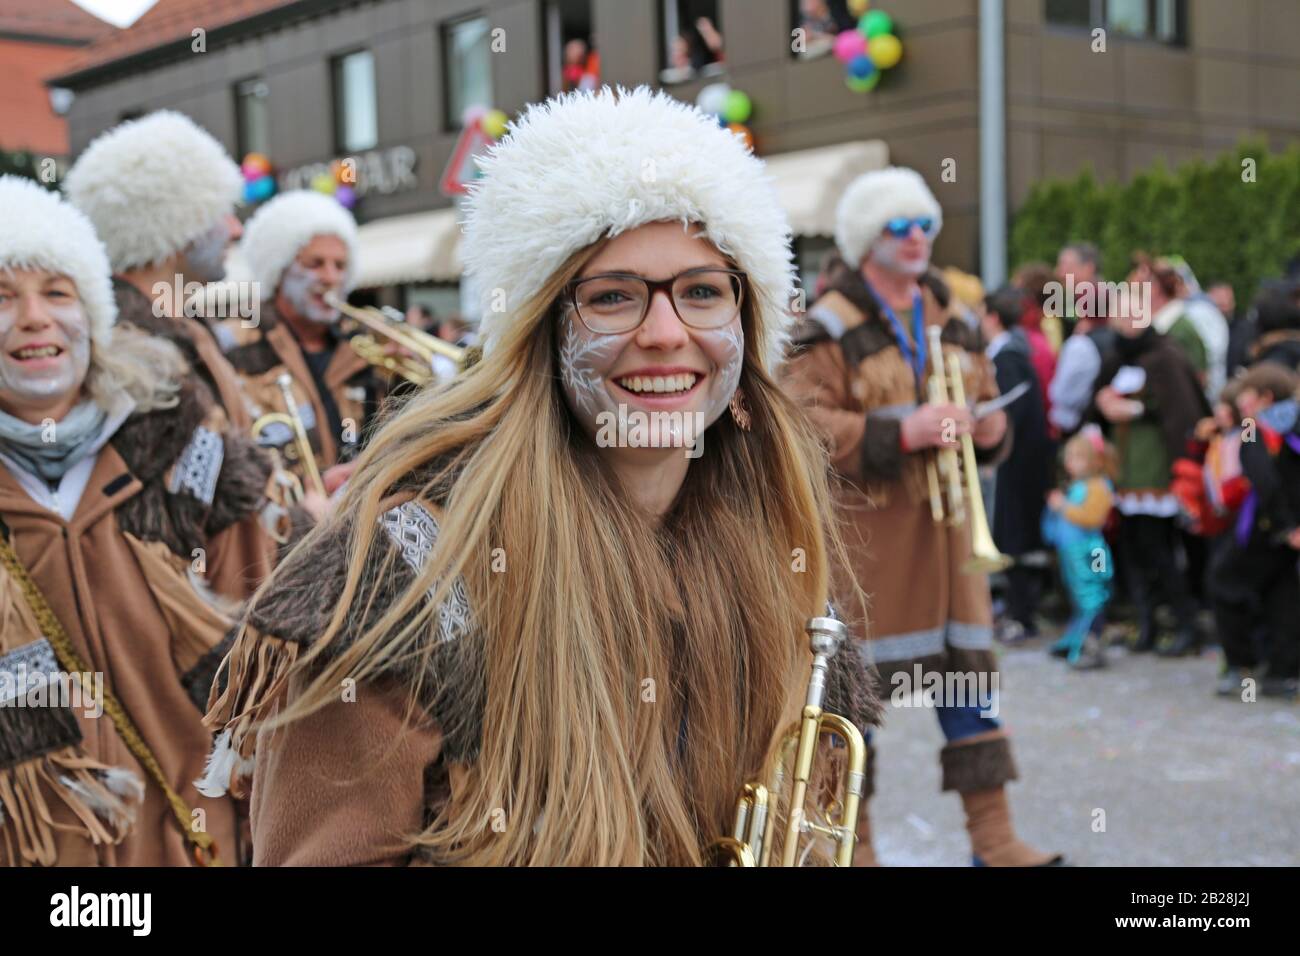 Donzdorf, Germania - 03 marzo 2019: Tradizionale processione festosa di carnevale Foto Stock